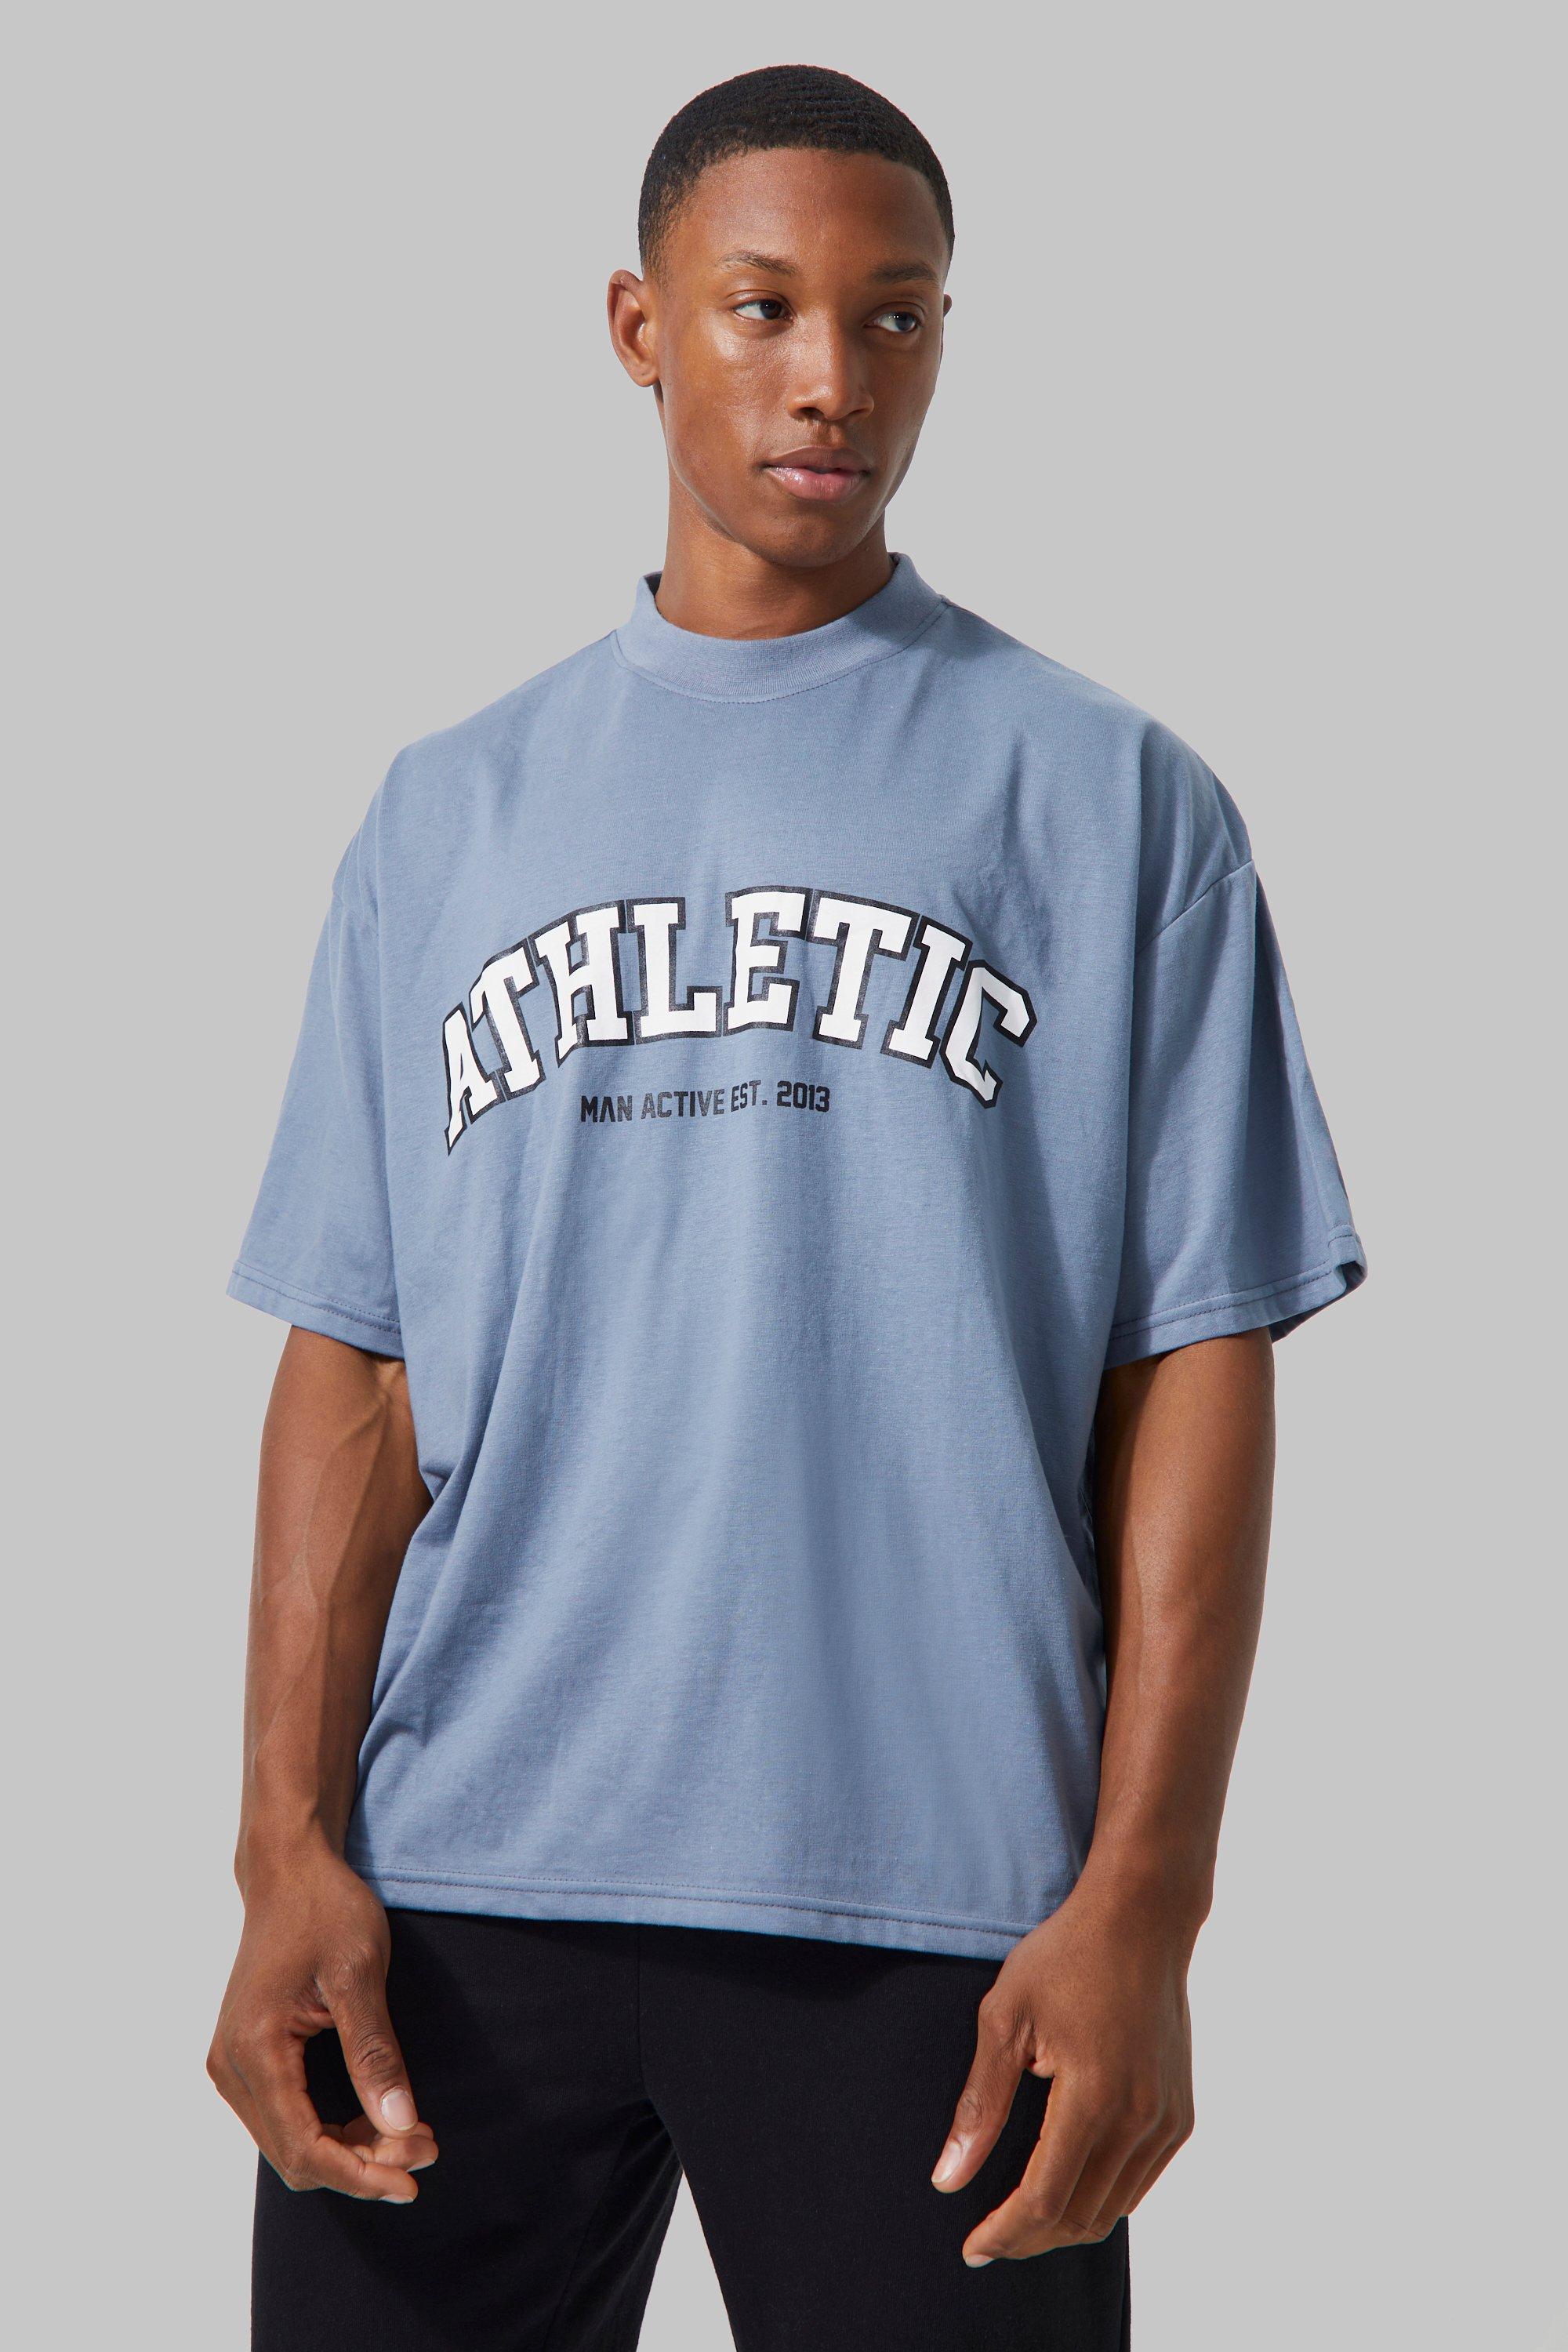 BUCROS T-Shirt Homme Hommes Summer Short Sleeve Fitness T-Shirt Running  Sport Gym Muscle T-Shirts Workout Casual Tops Vêtements-Blue,4XL :  : Mode